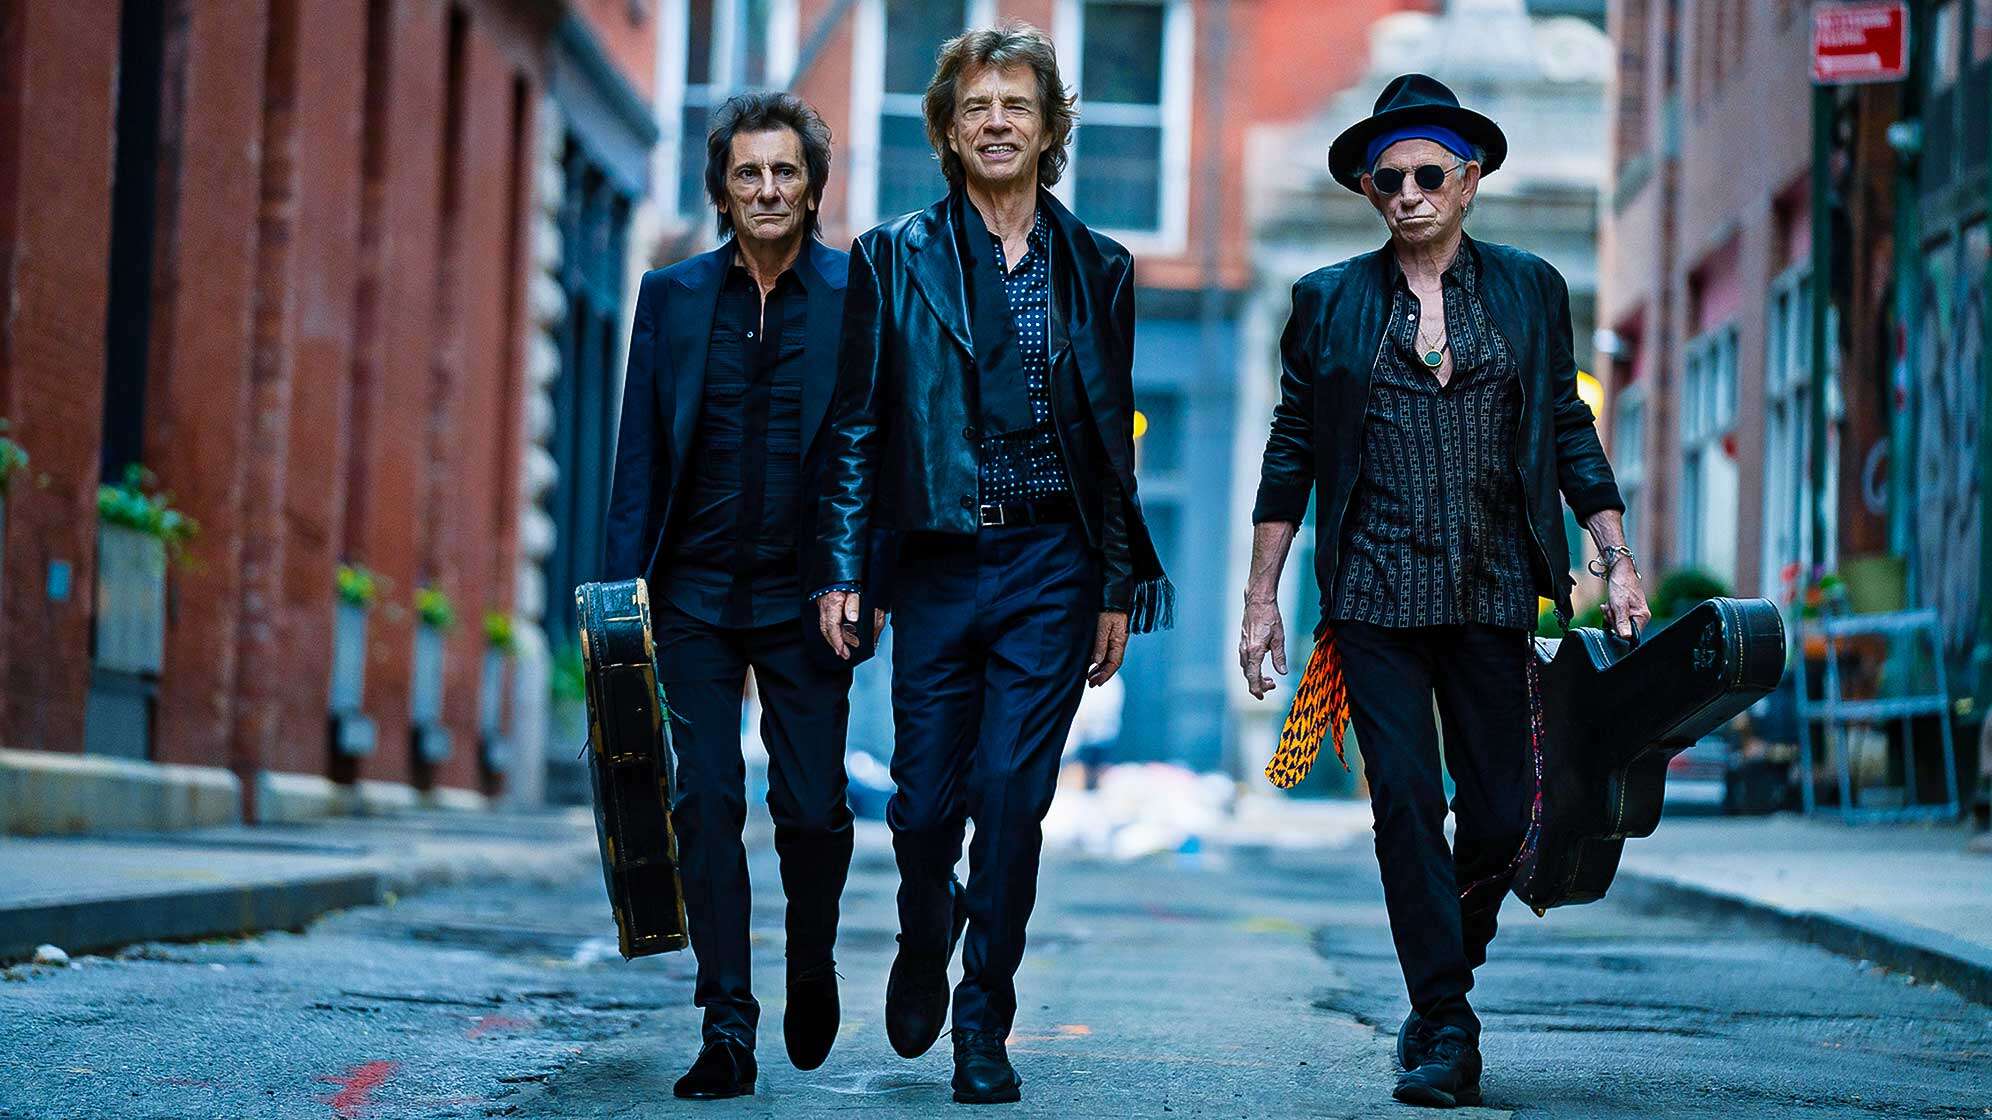 Das aktuelle Bandfoto der Rolling Stones - von links nach rechts: Ron Wood, Mick Jagger und Keith Richards.